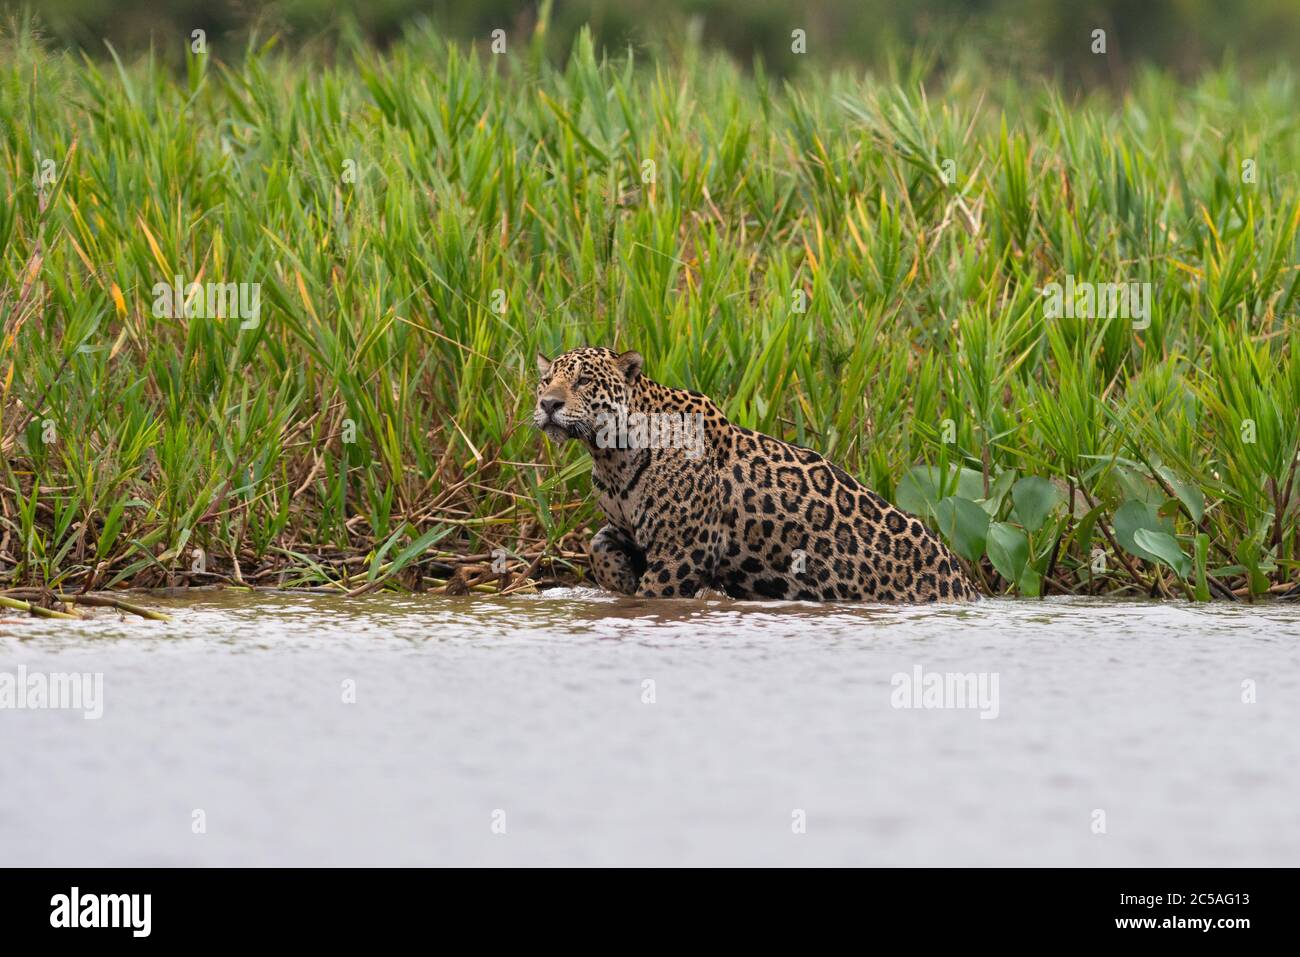 A wild Jaguar (Panthera onca) from North Pantanal, Brazil Stock Photo